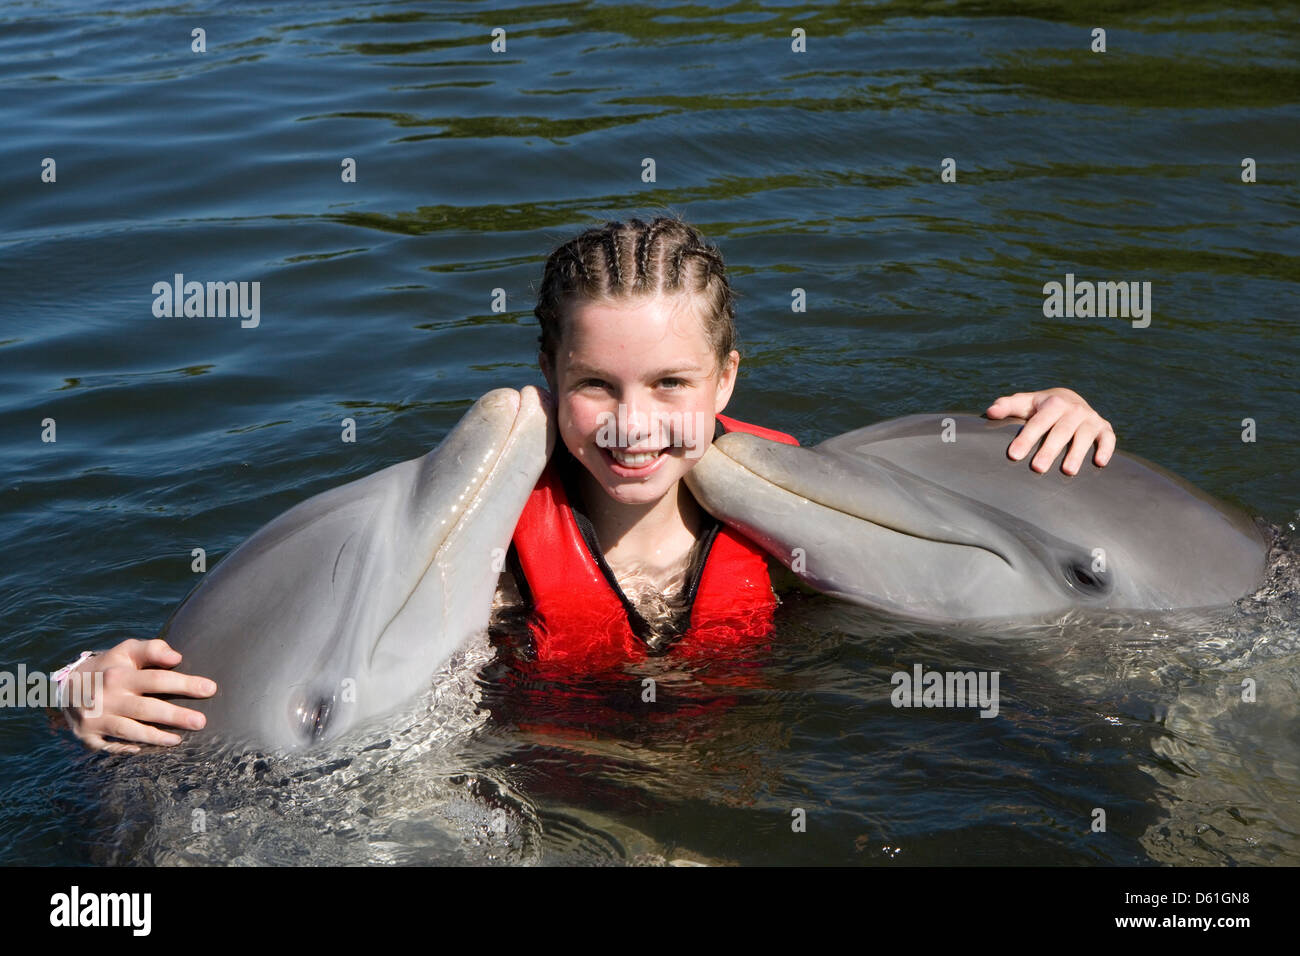 Carretera Las Morlas: Delfinario / Dolphinarium Stock Photo - Alamy